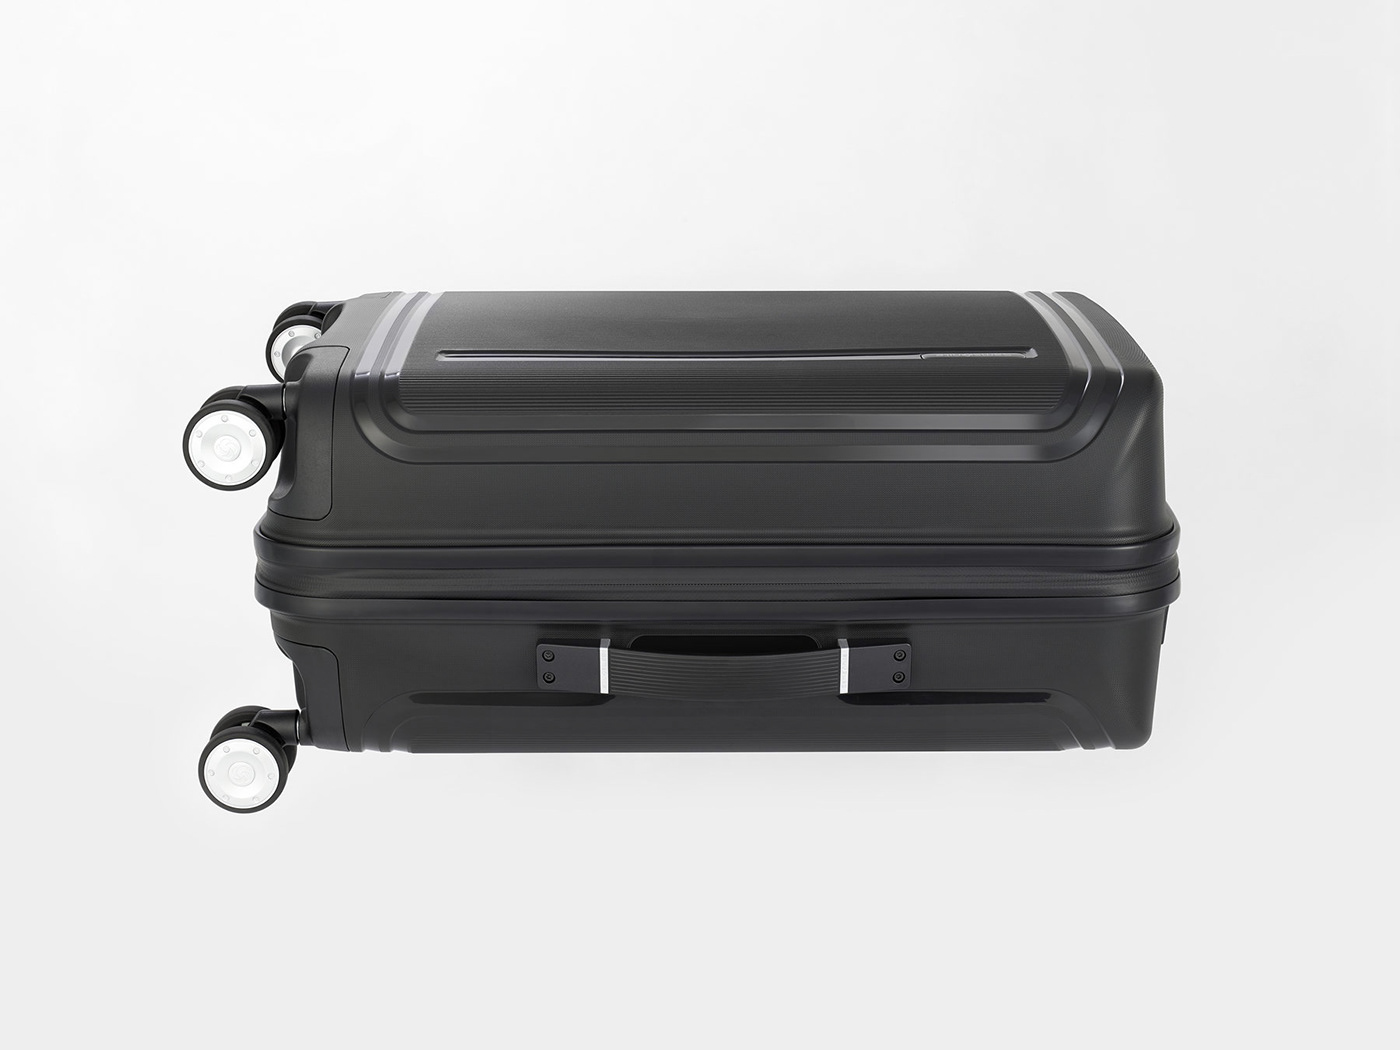 bag cmf industrial design  luggage plane premium product design  samsonite suitcase Travel